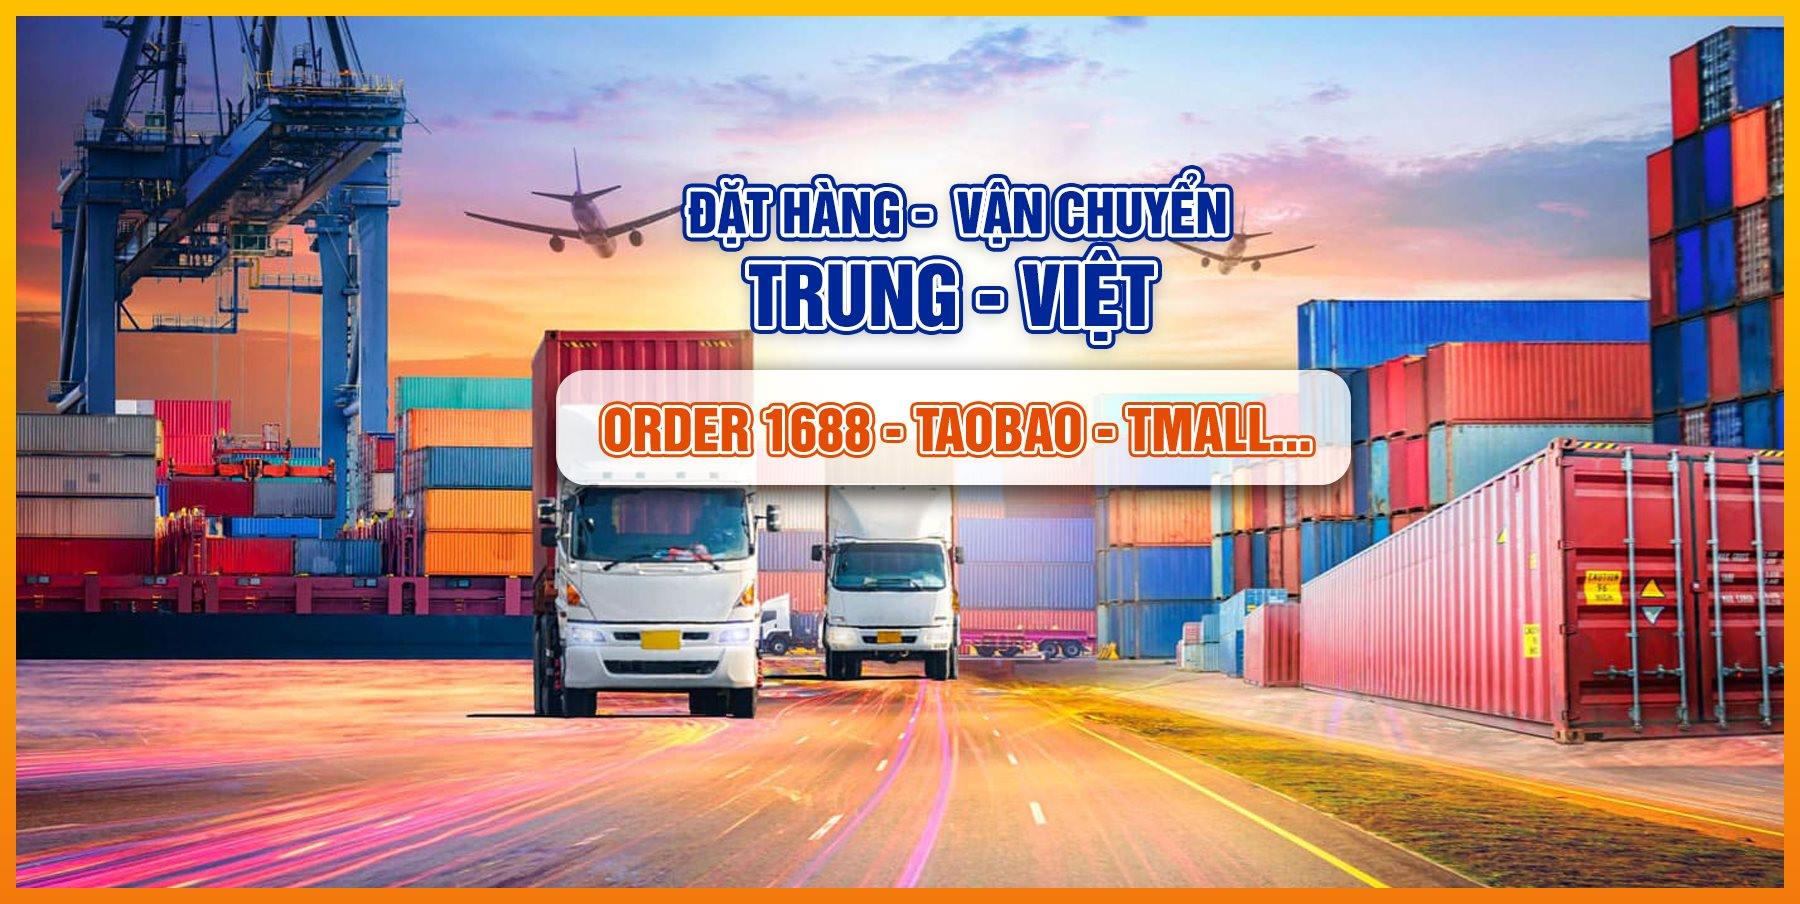 Dịch vụ vận chuyển Trung - Việt